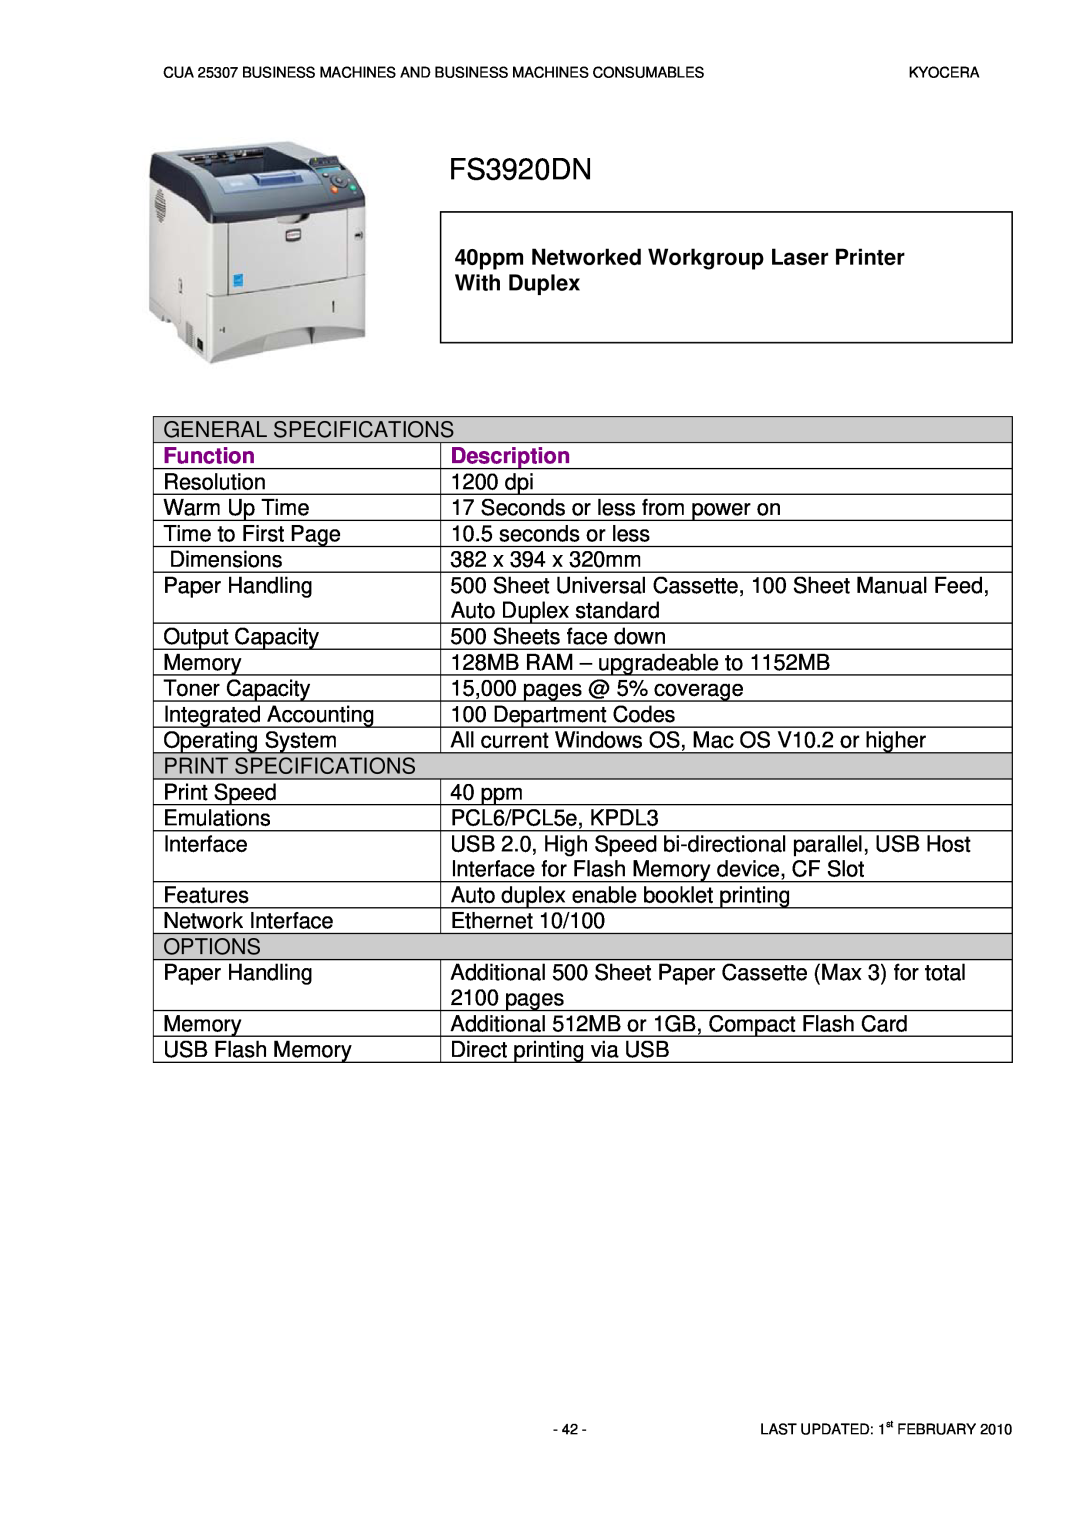 Kyocera CUA 25307 manual FS3920DN, Function, Description 1200 dpi 